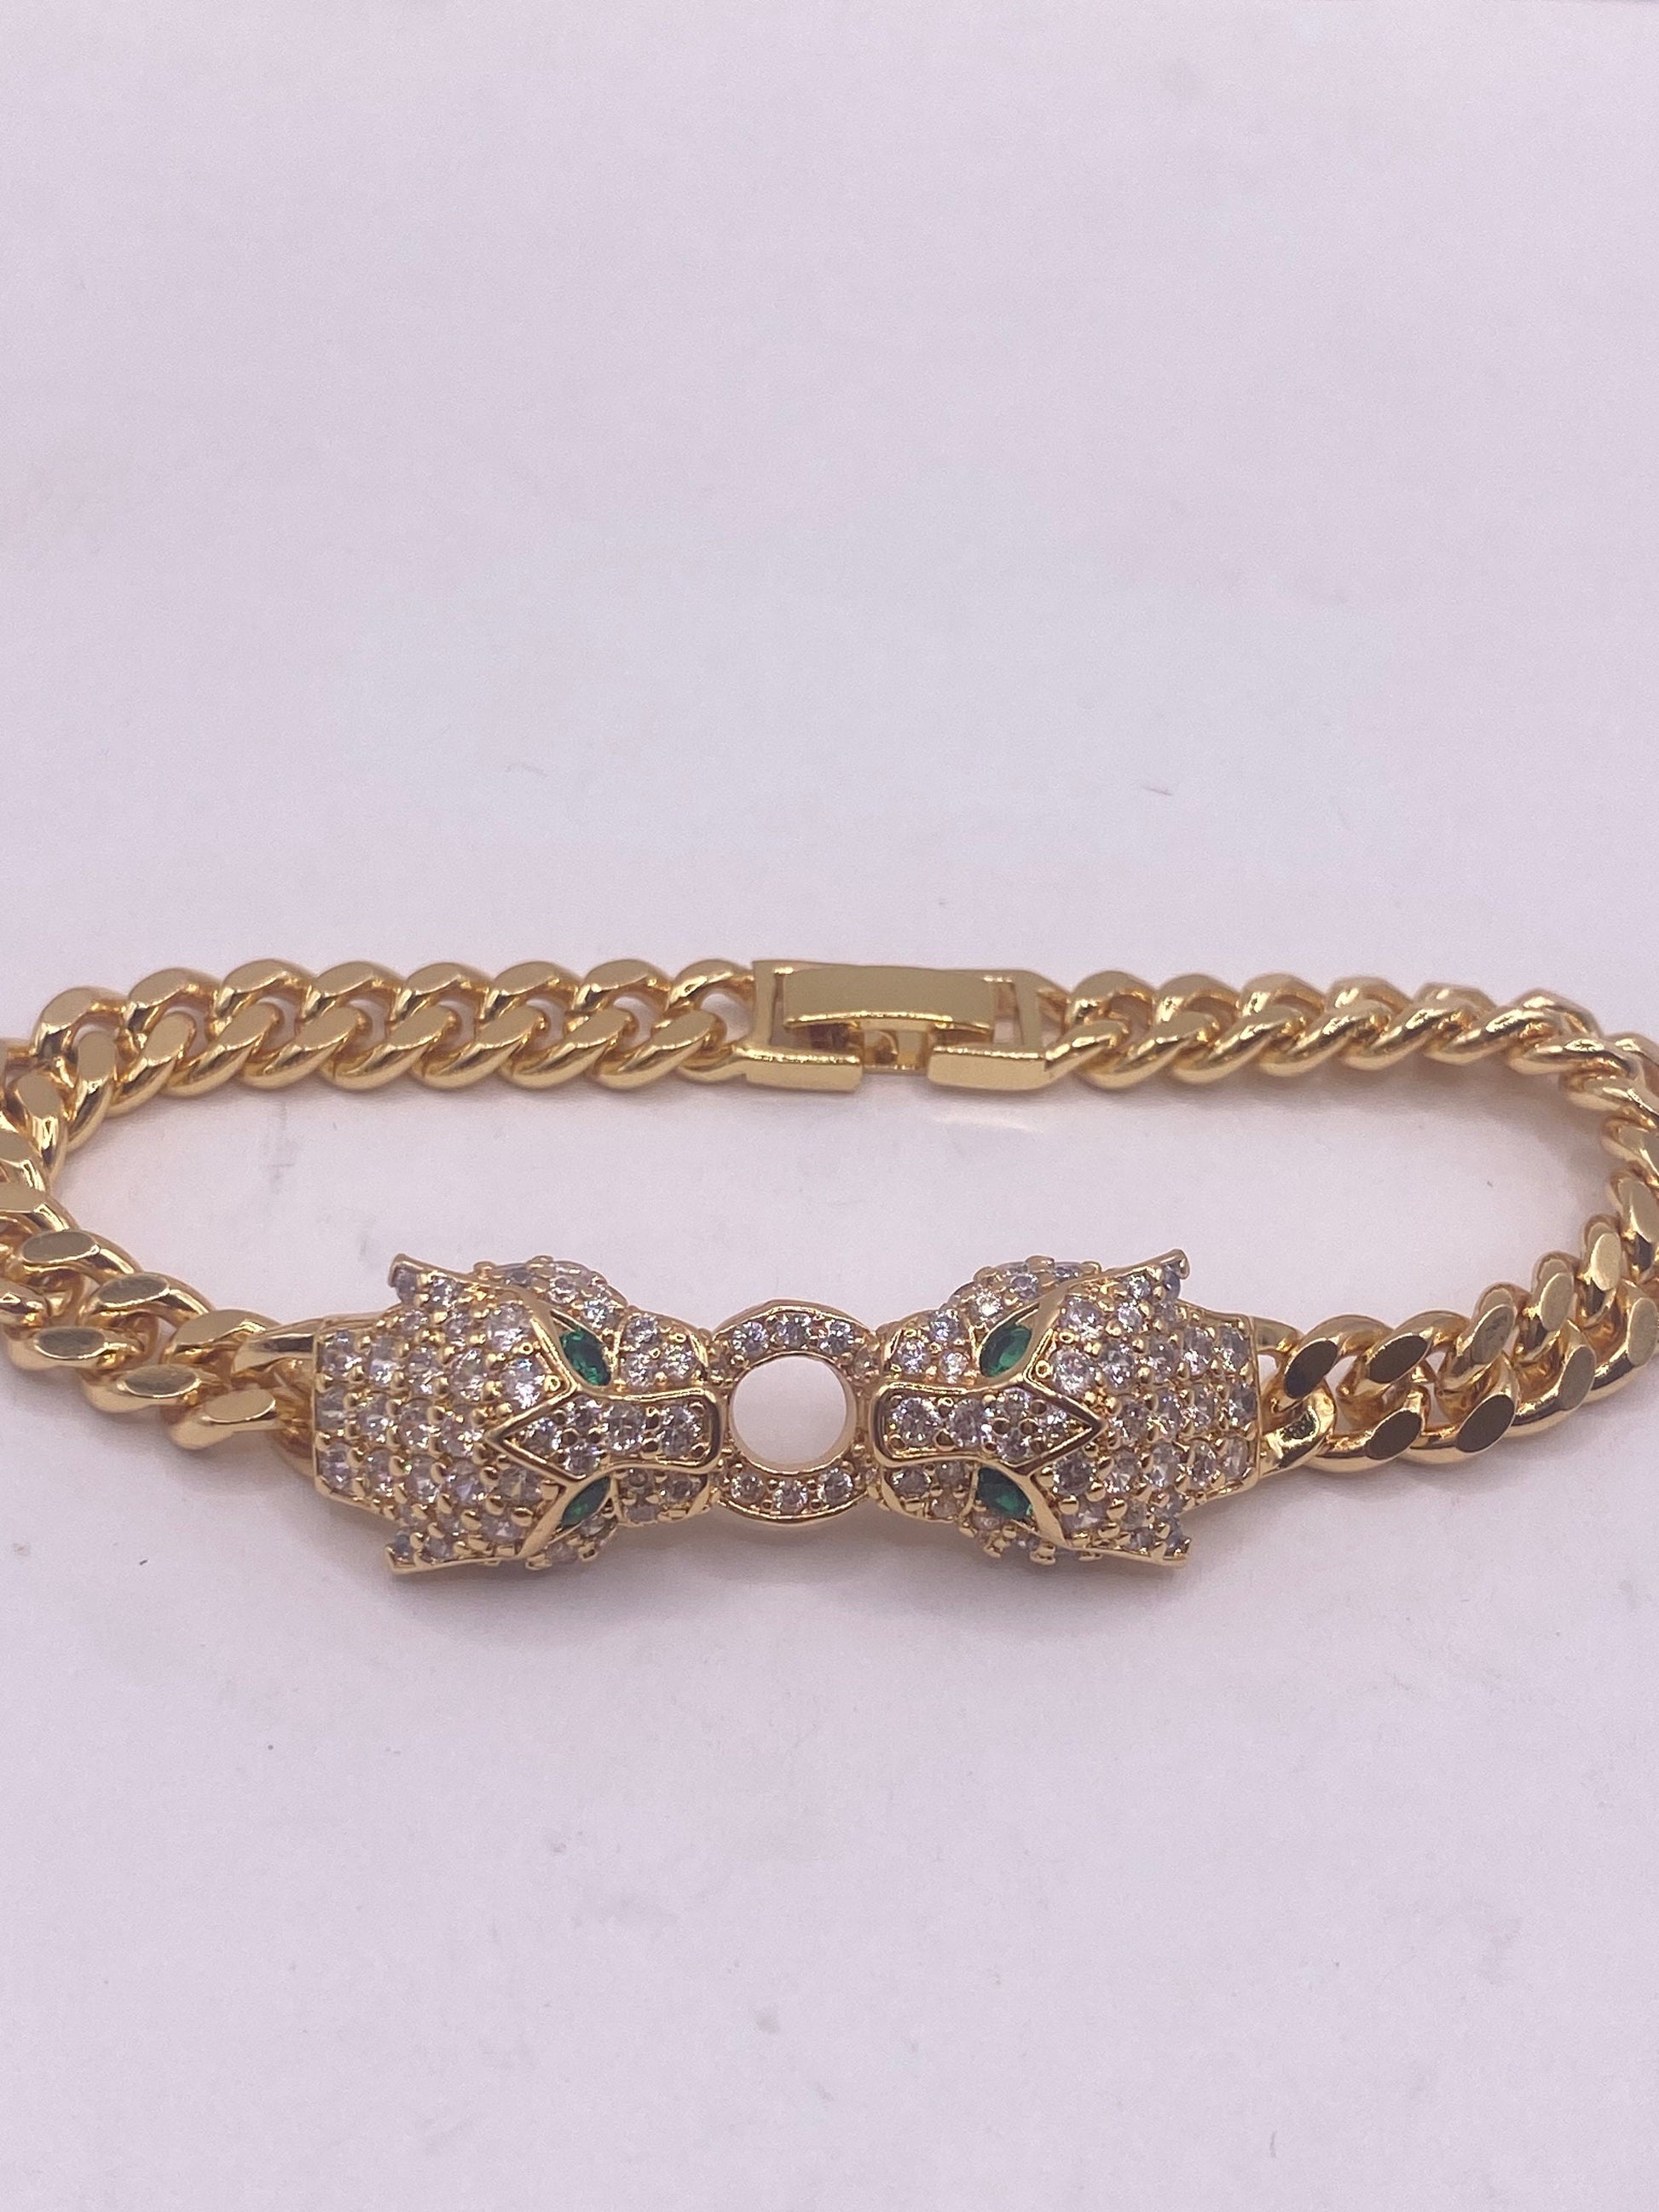 Vintage Cougar Cat Bangle Bracelet Gold filled Green Crystal Eyes